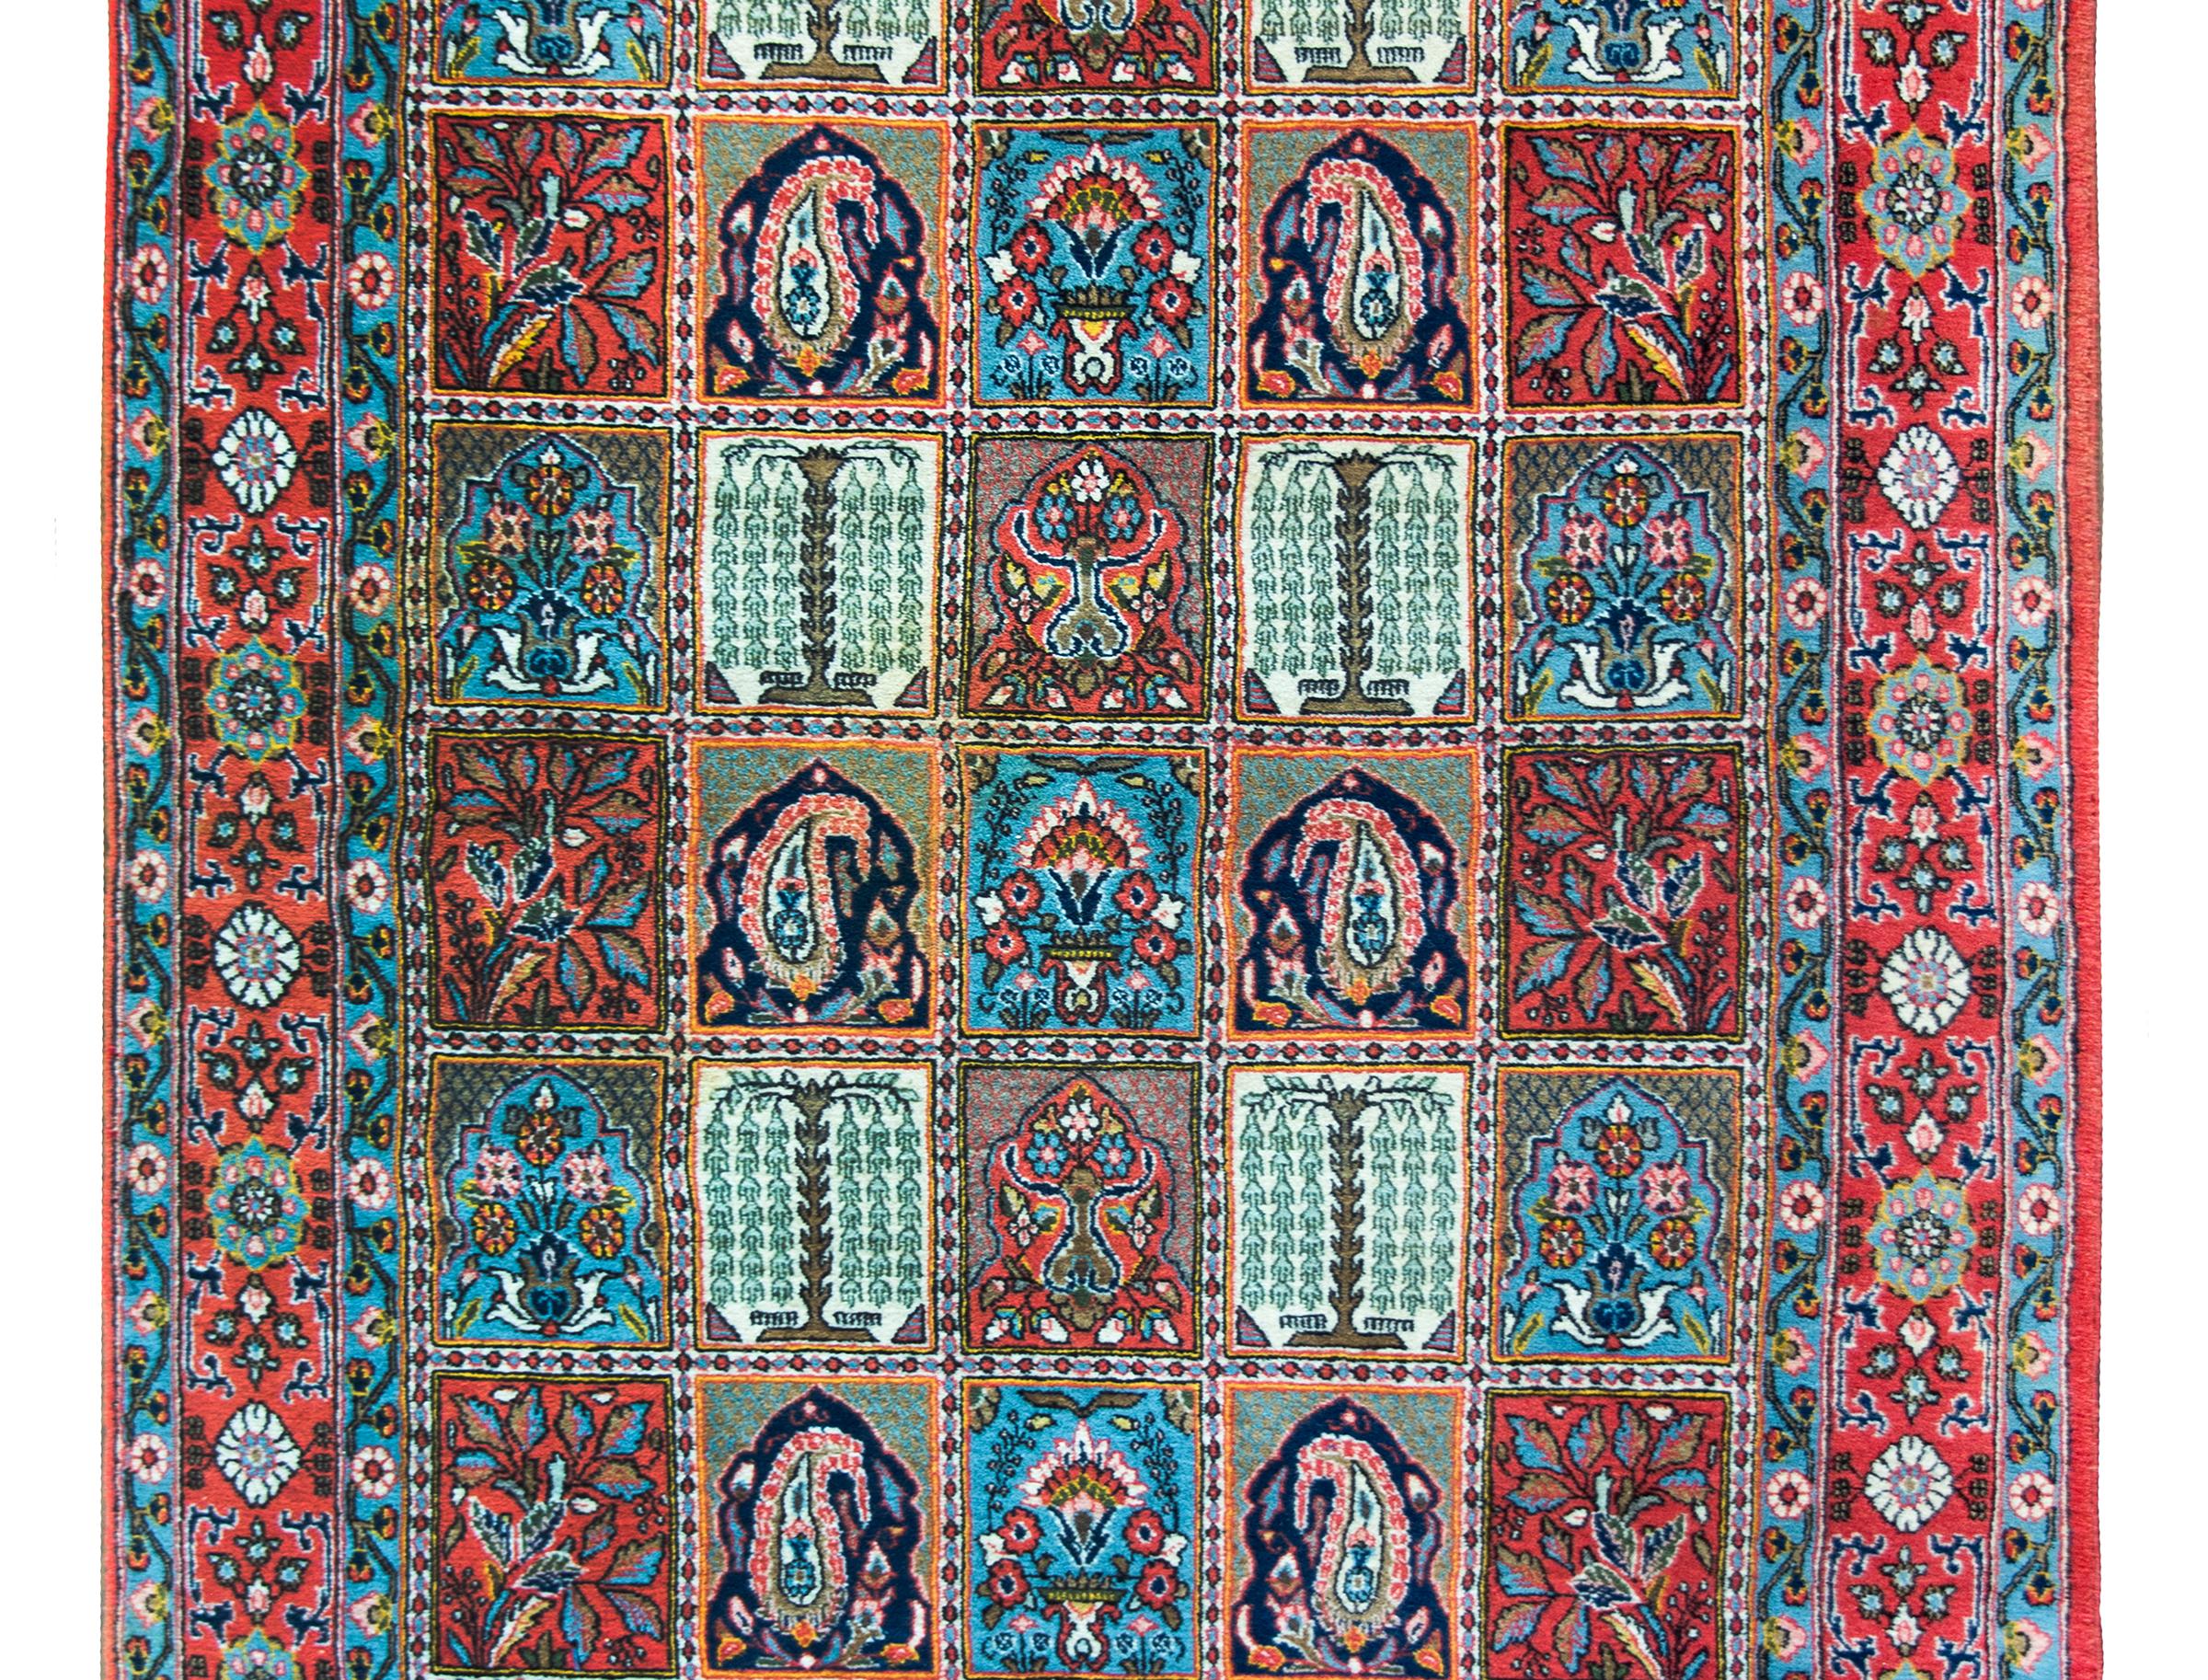 Ein wunderschöner persischer Bachtiari-Teppich im Vintage-Stil mit einem Allover-Patchwork-Muster mit mehreren sich wiederholenden Blumen-, Paisley-, Trauerweiden- und Lebensbaummustern, umgeben von einer Bordüre mit einem breiten zentralen